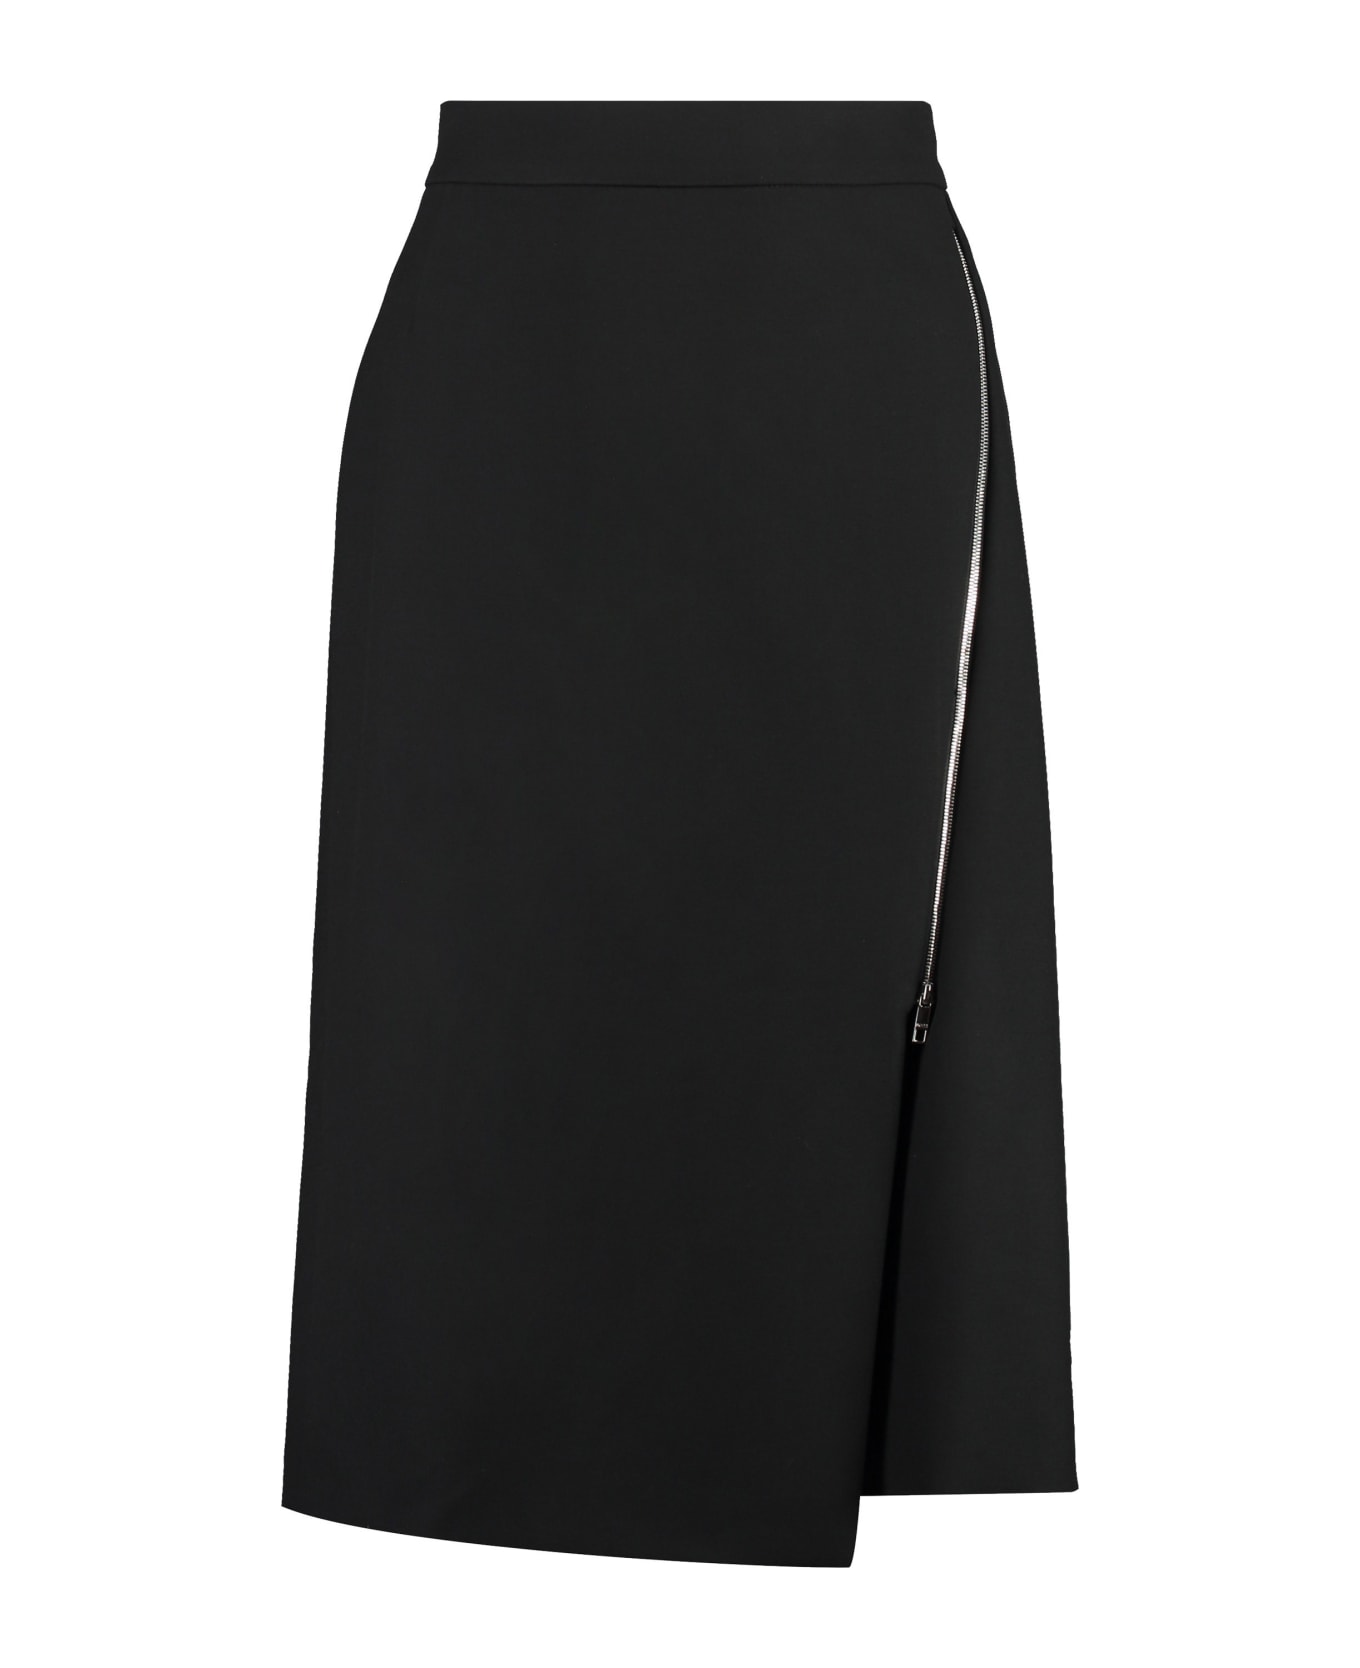 Hugo Boss A-line Skirt - black